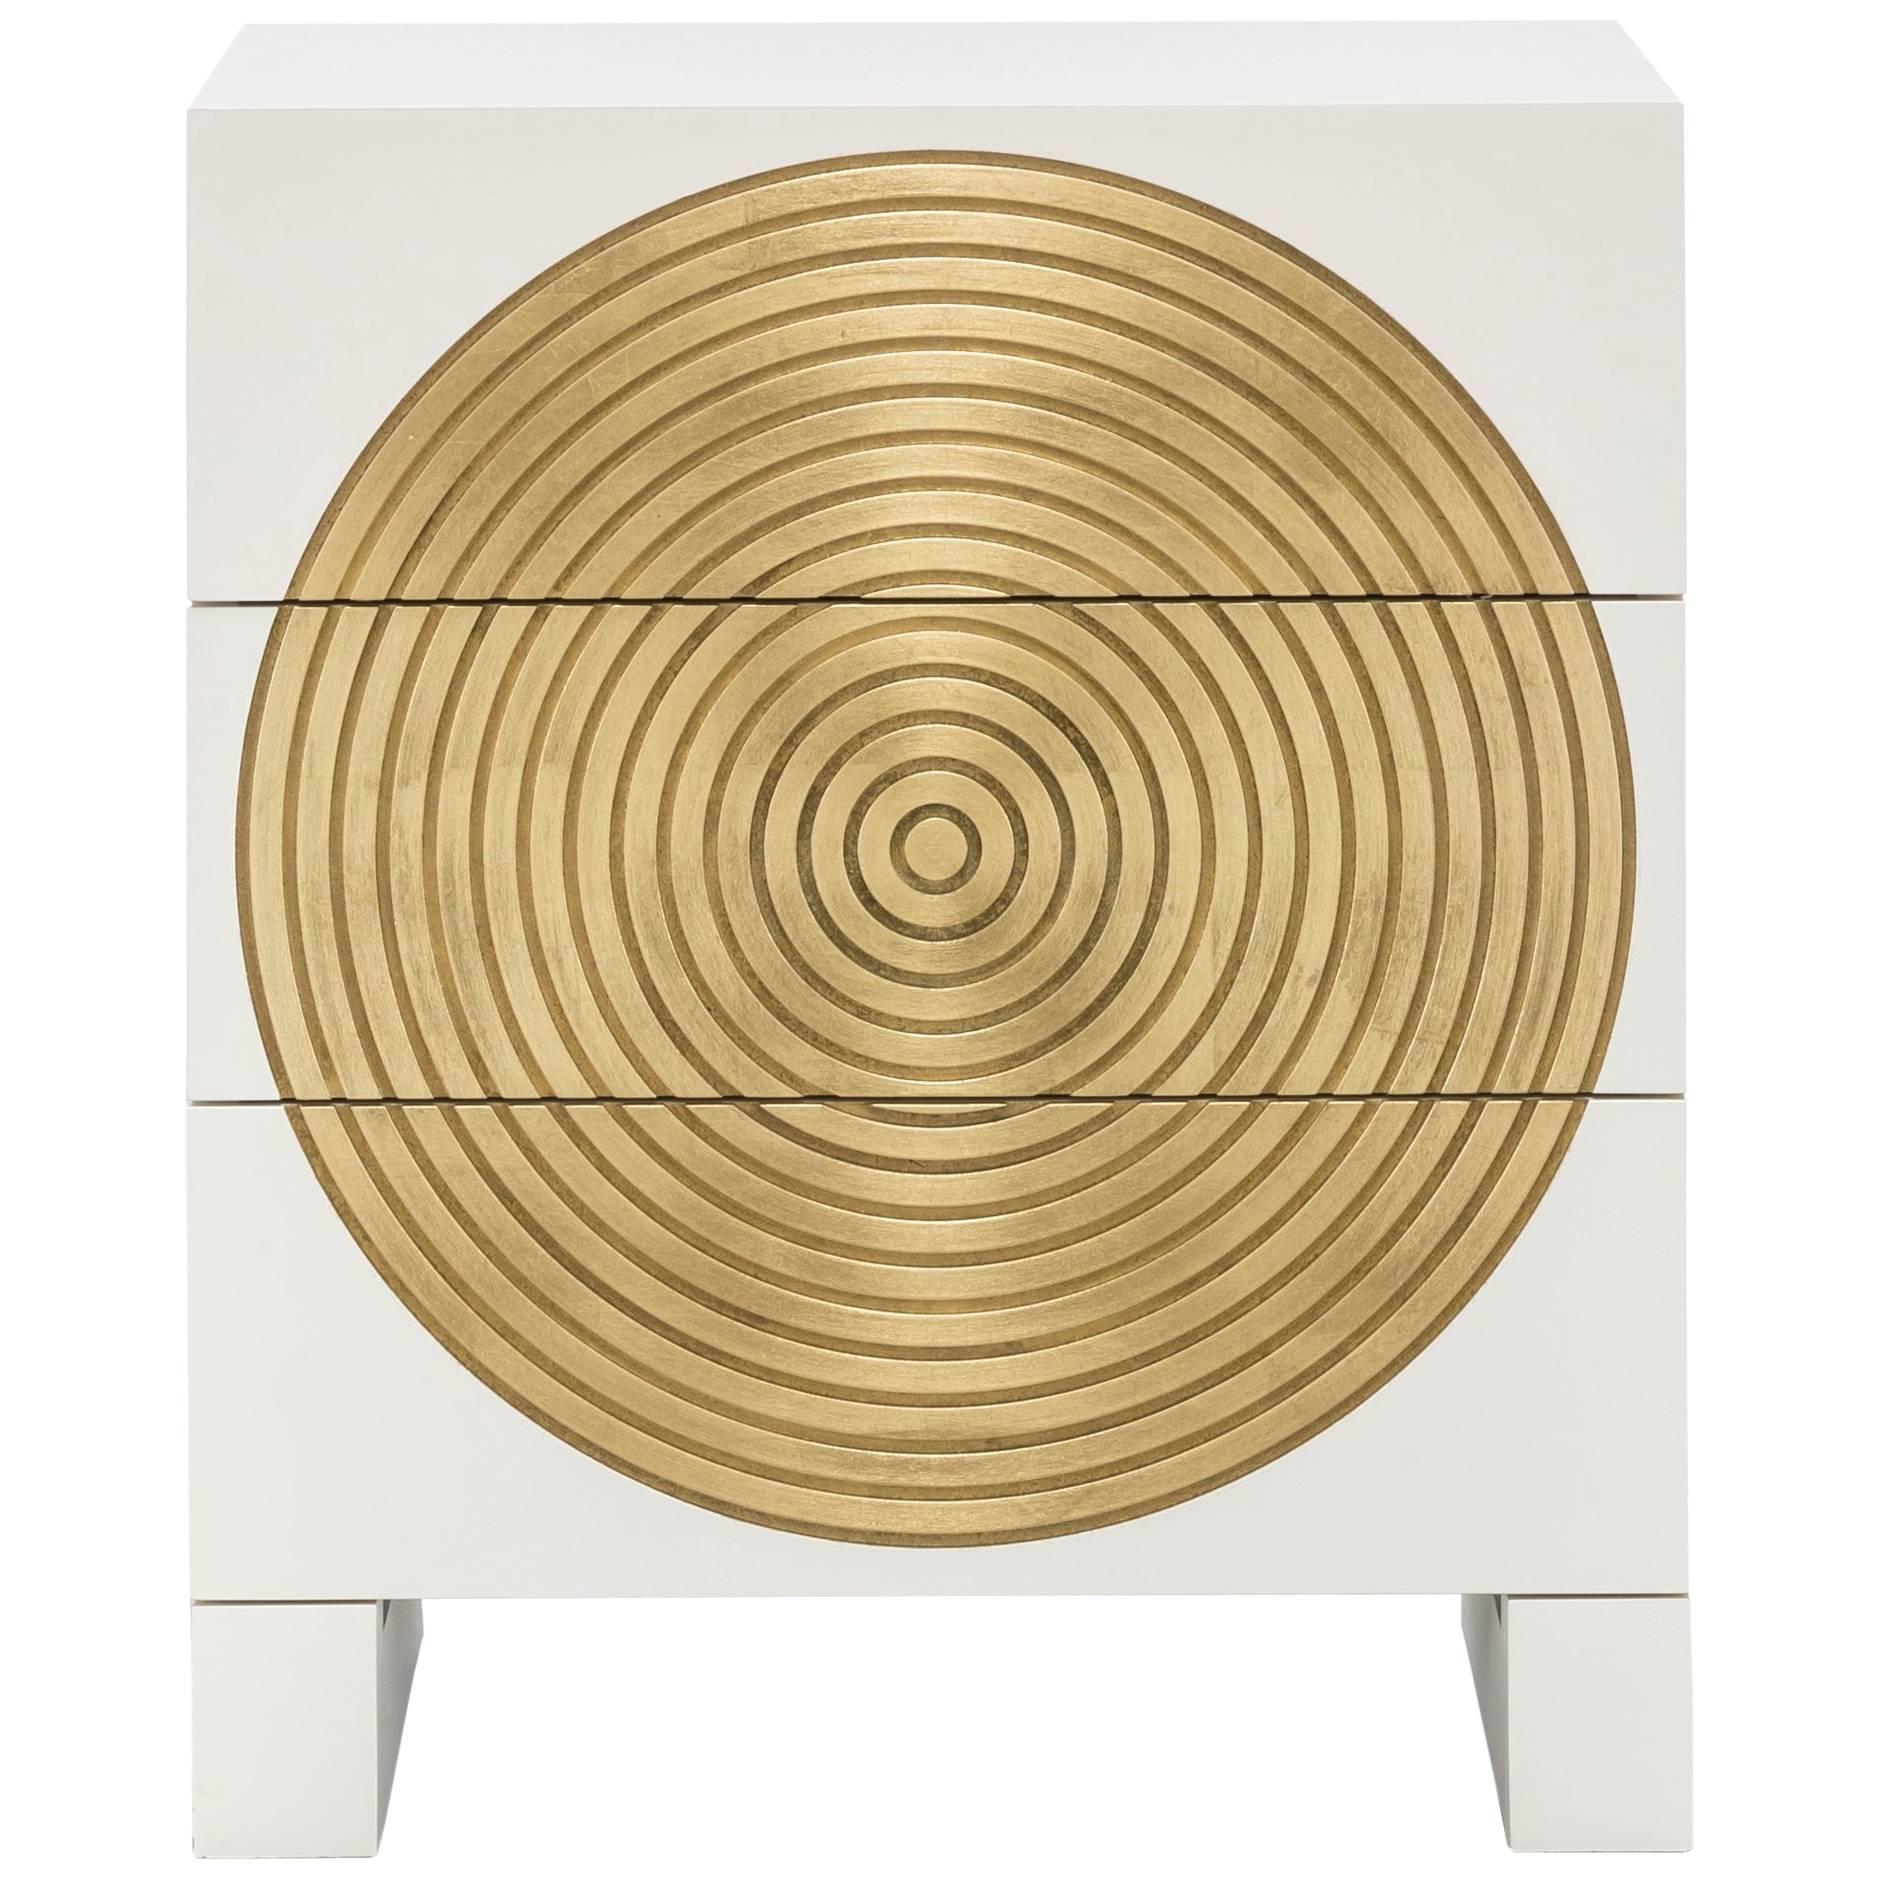 HALO NIGHTSTAND - Table de nuit moderne au design circulaire avec détails en feuilles d'or